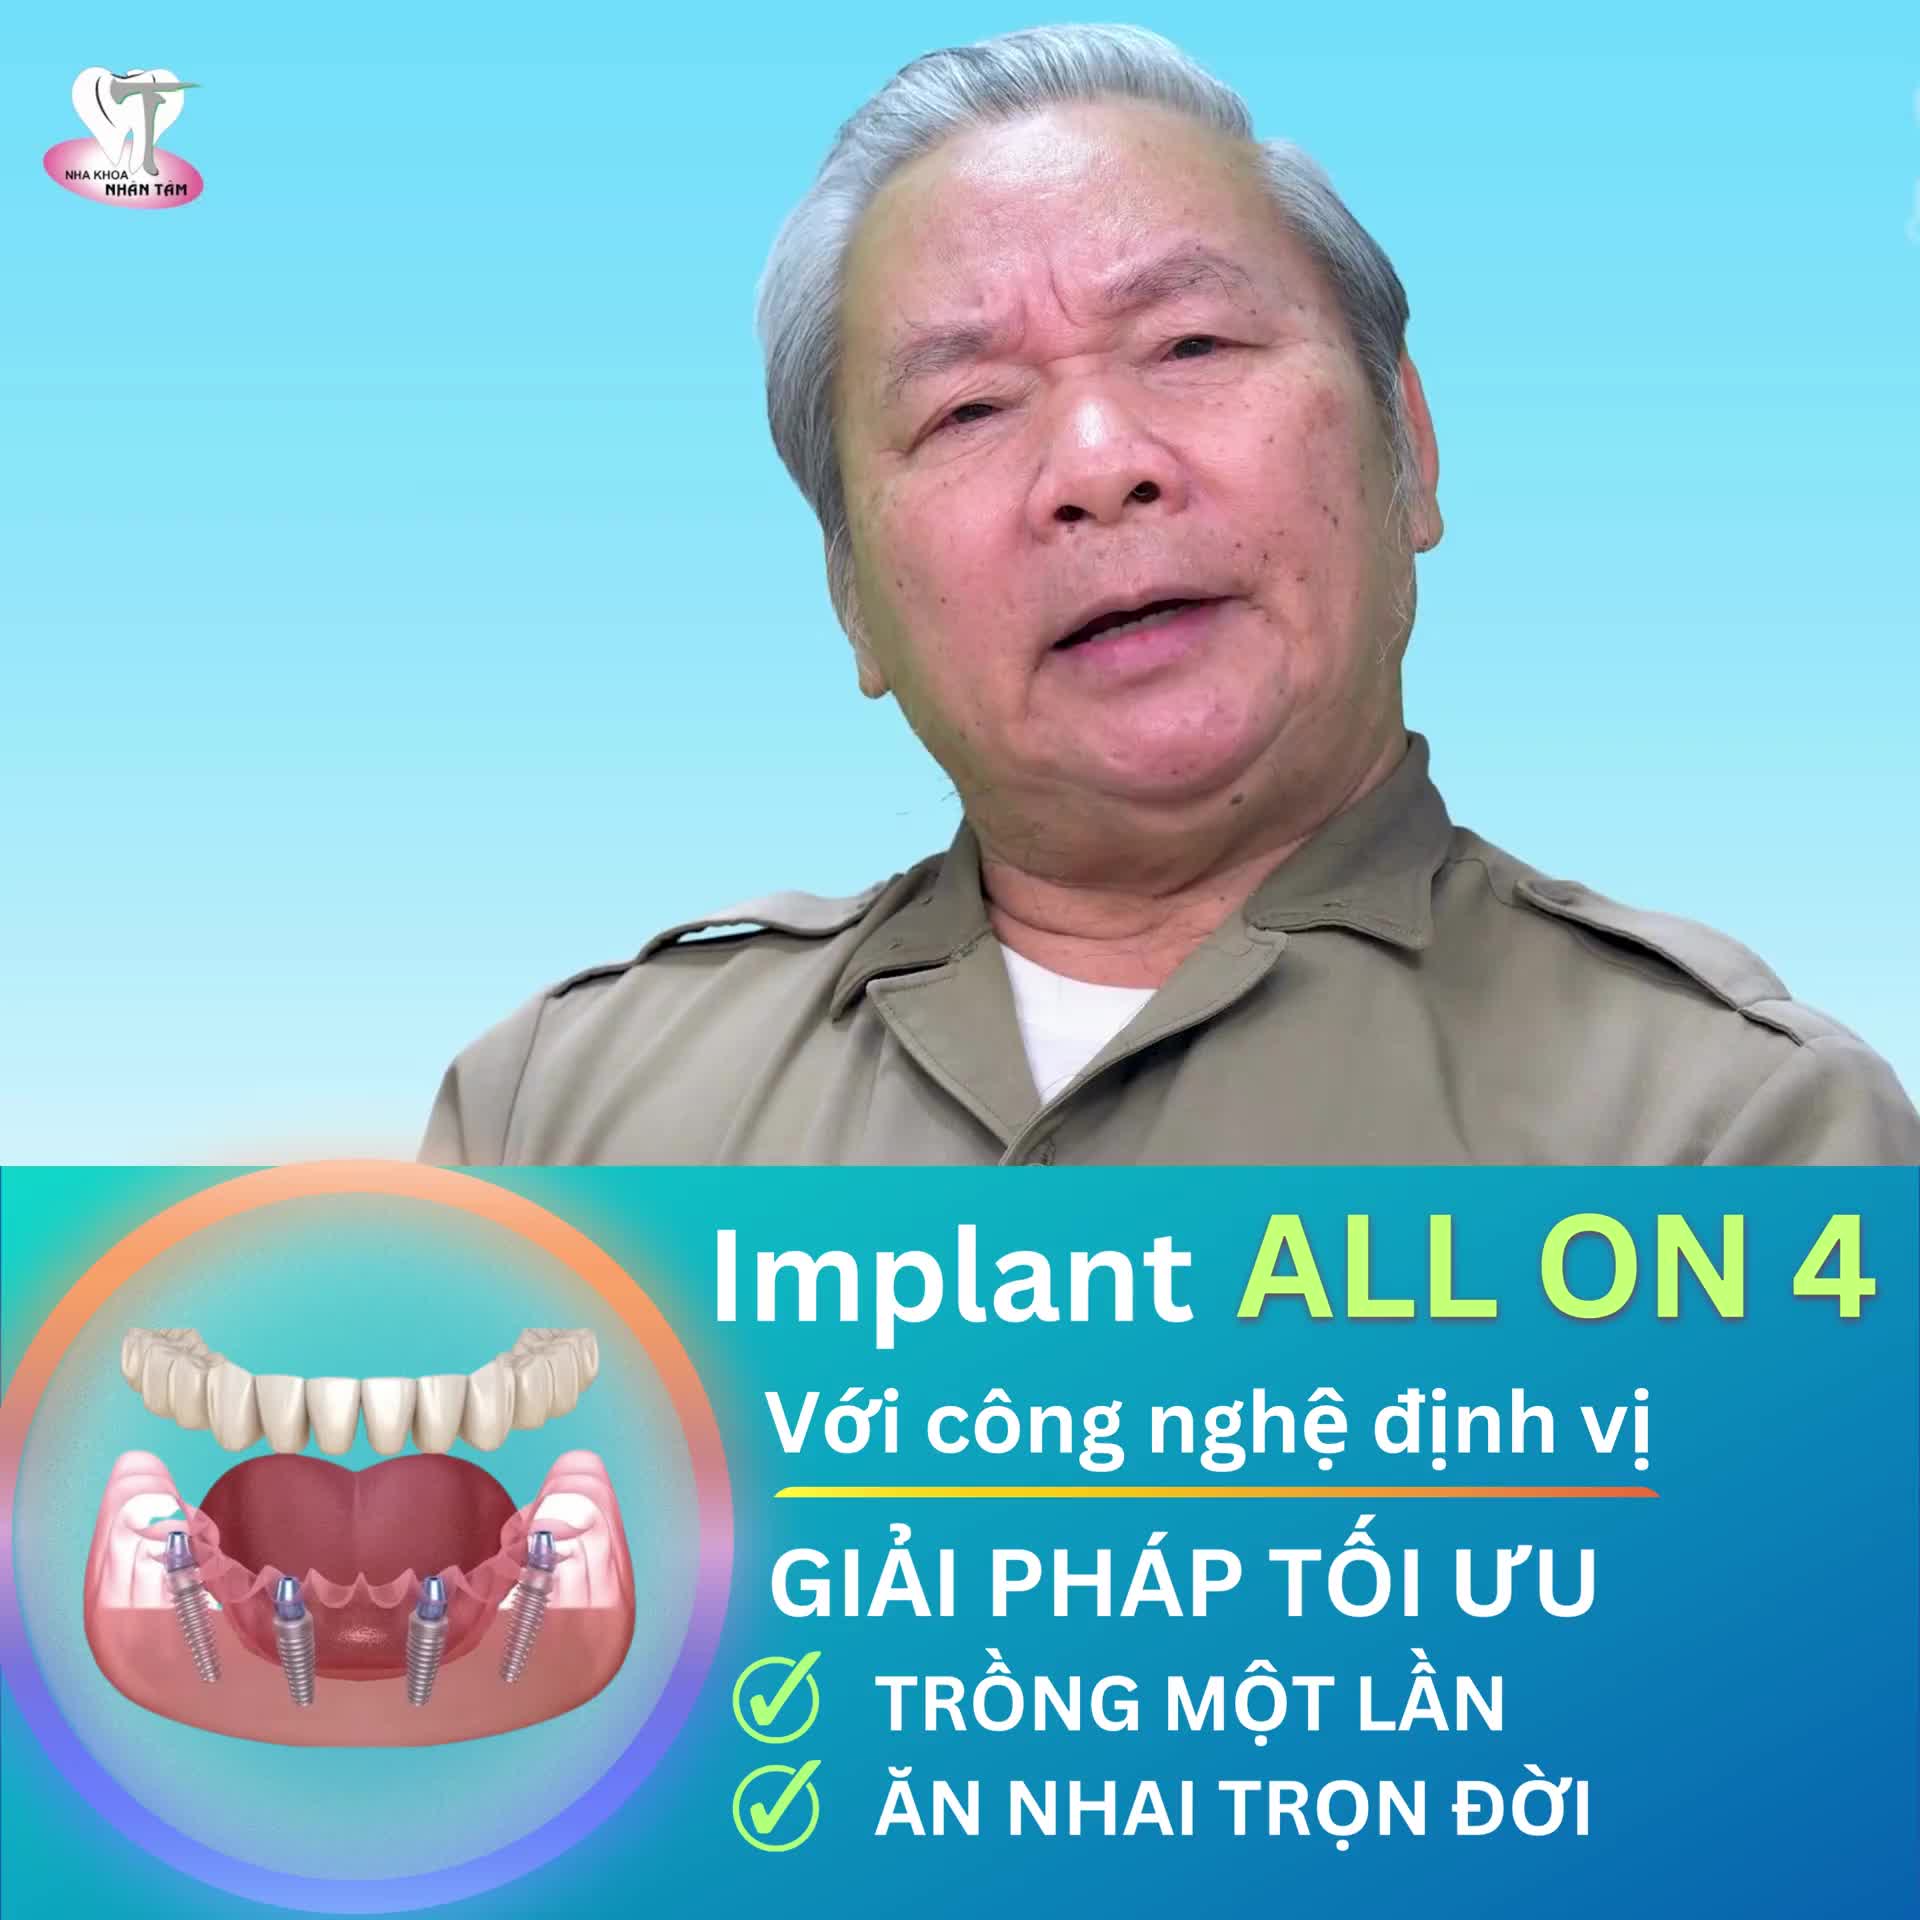 Implant All On 4 + Phục hình 12 răng sứ bắt vít trên Implant